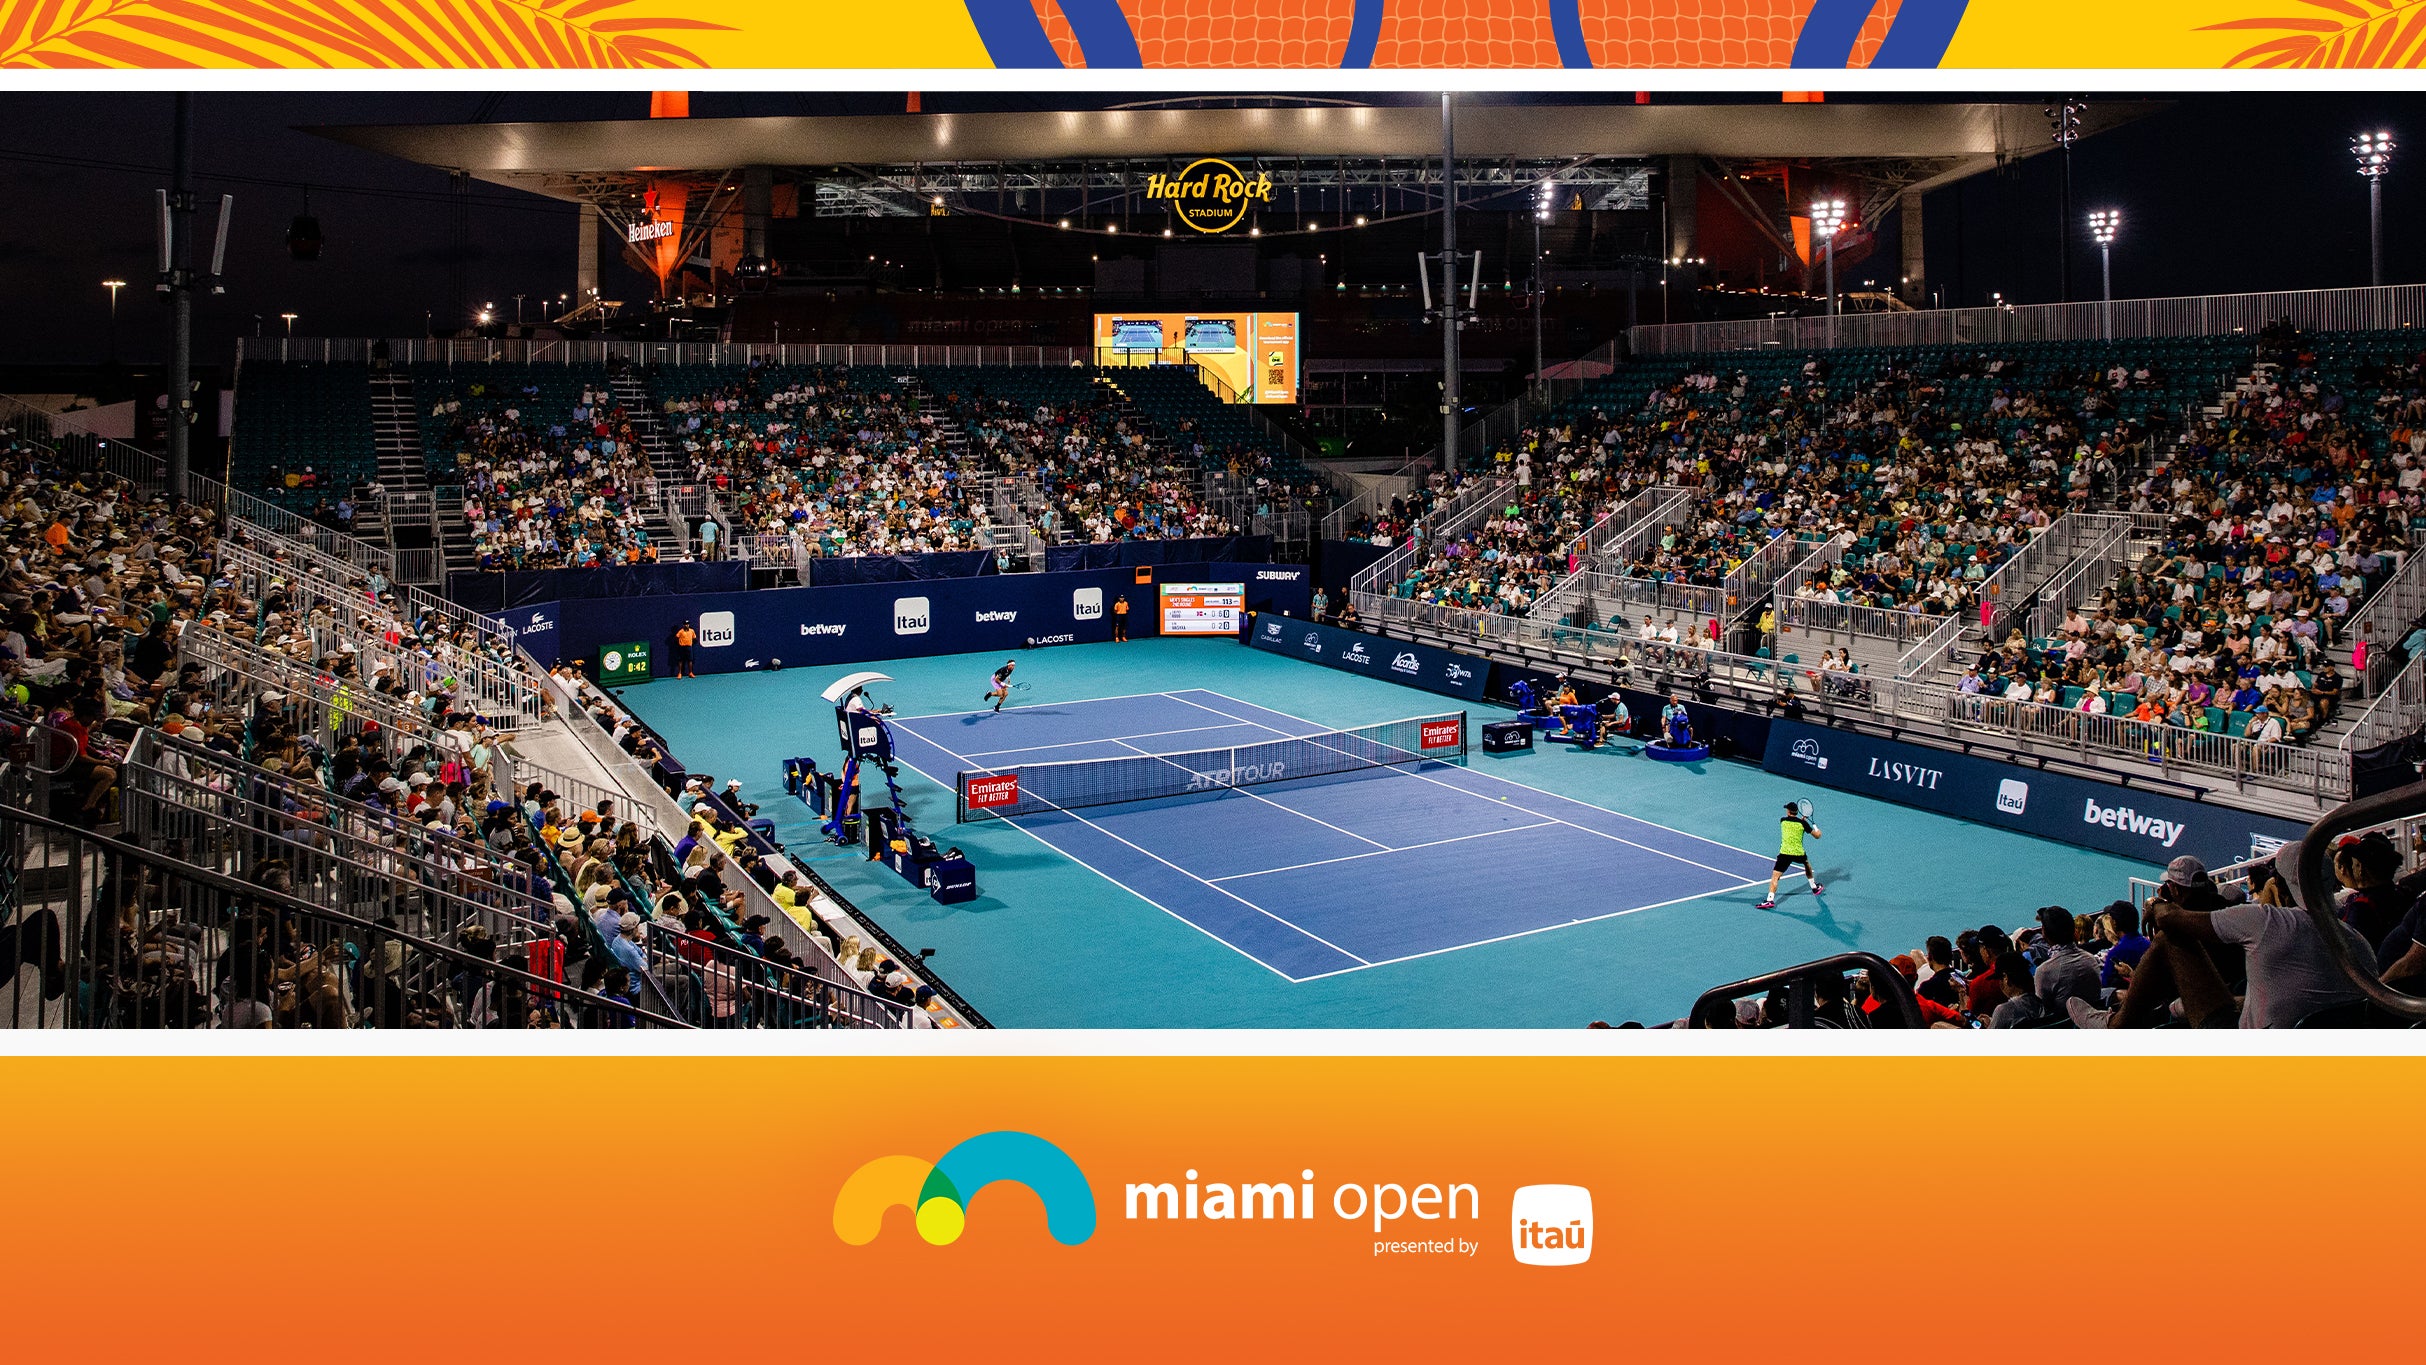 Miami Open - Grandstand Session 17 in Miami promo photo for Miami Open presale offer code